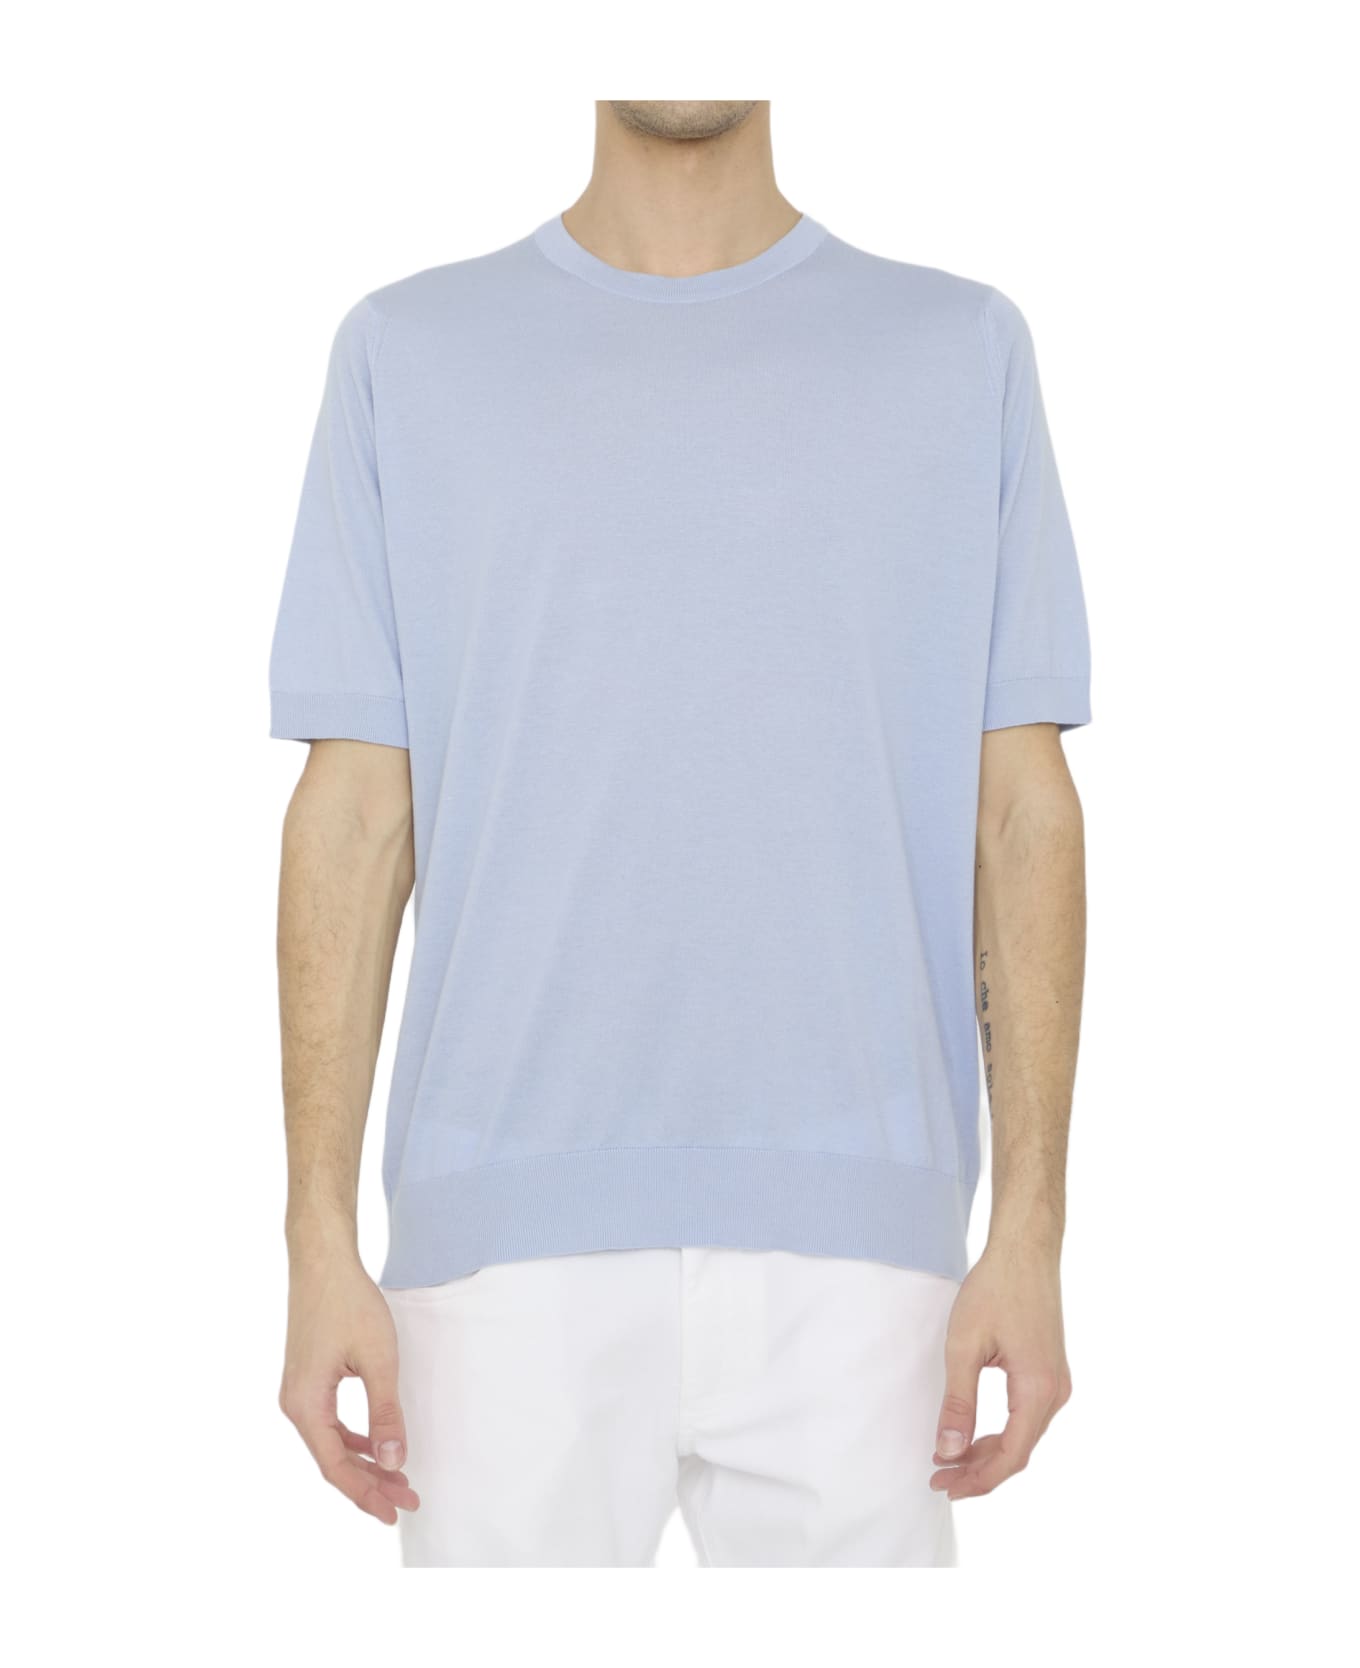 John Smedley Kempton T-shirt - LIGHT BLUE